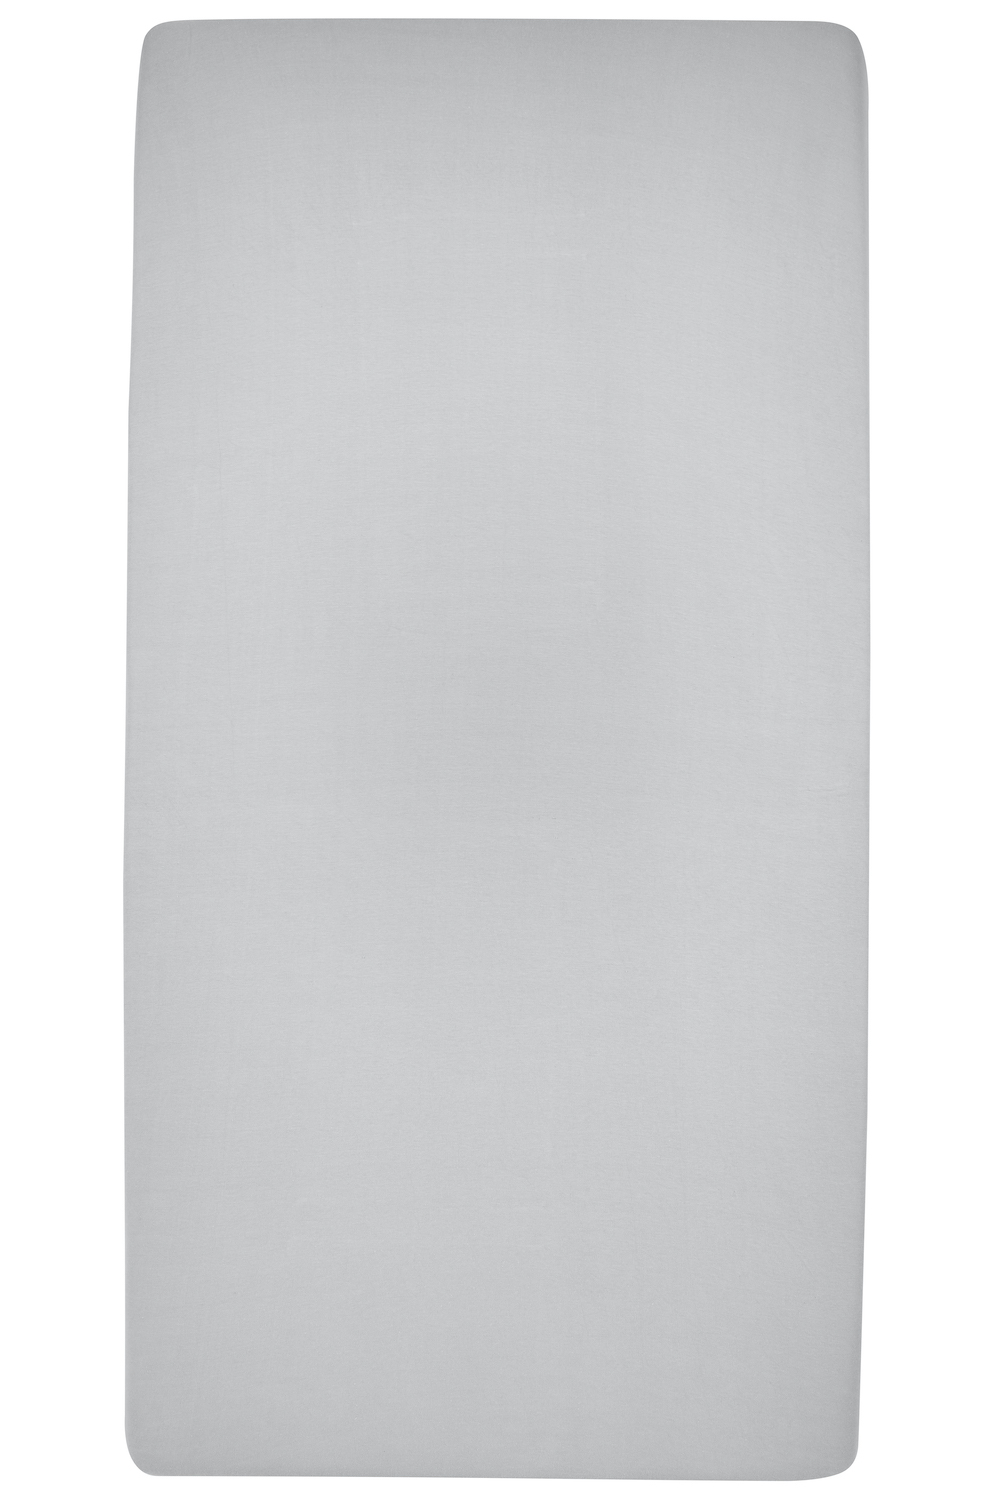 Hoeslaken tweepersoons Uni - light grey - 140x200cm